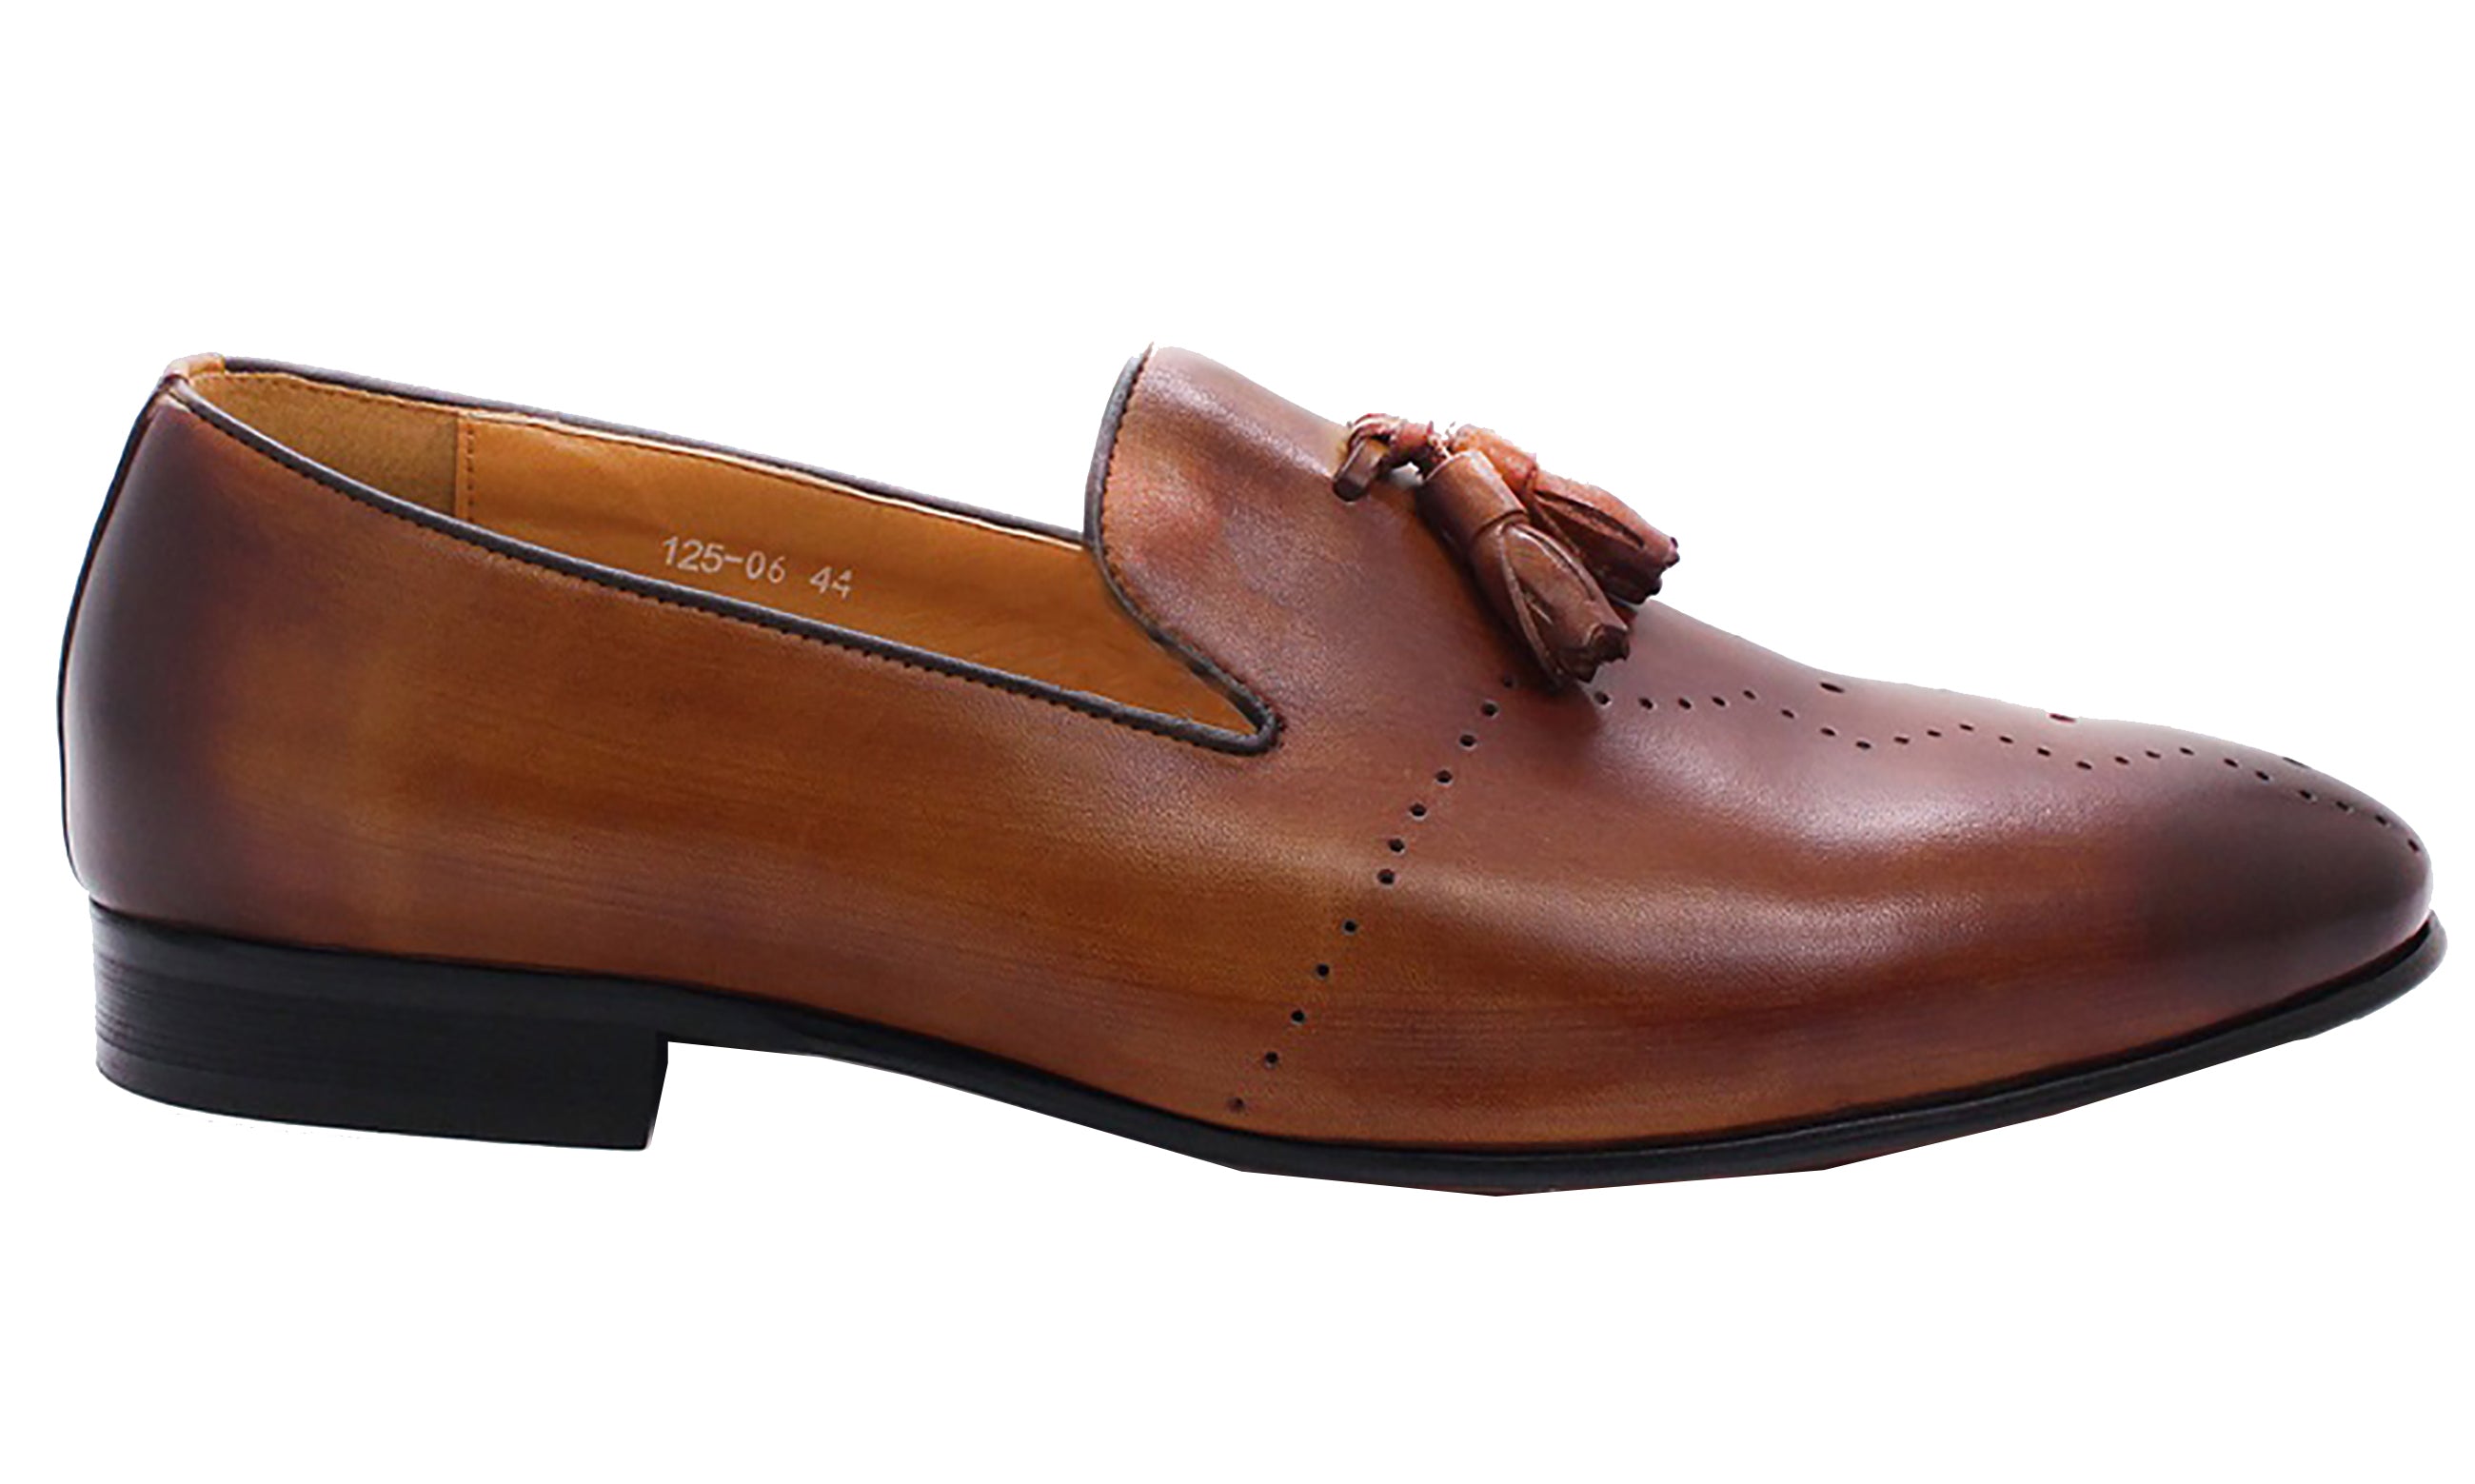 Men's Dress Formal Tassel Loafers Shoes